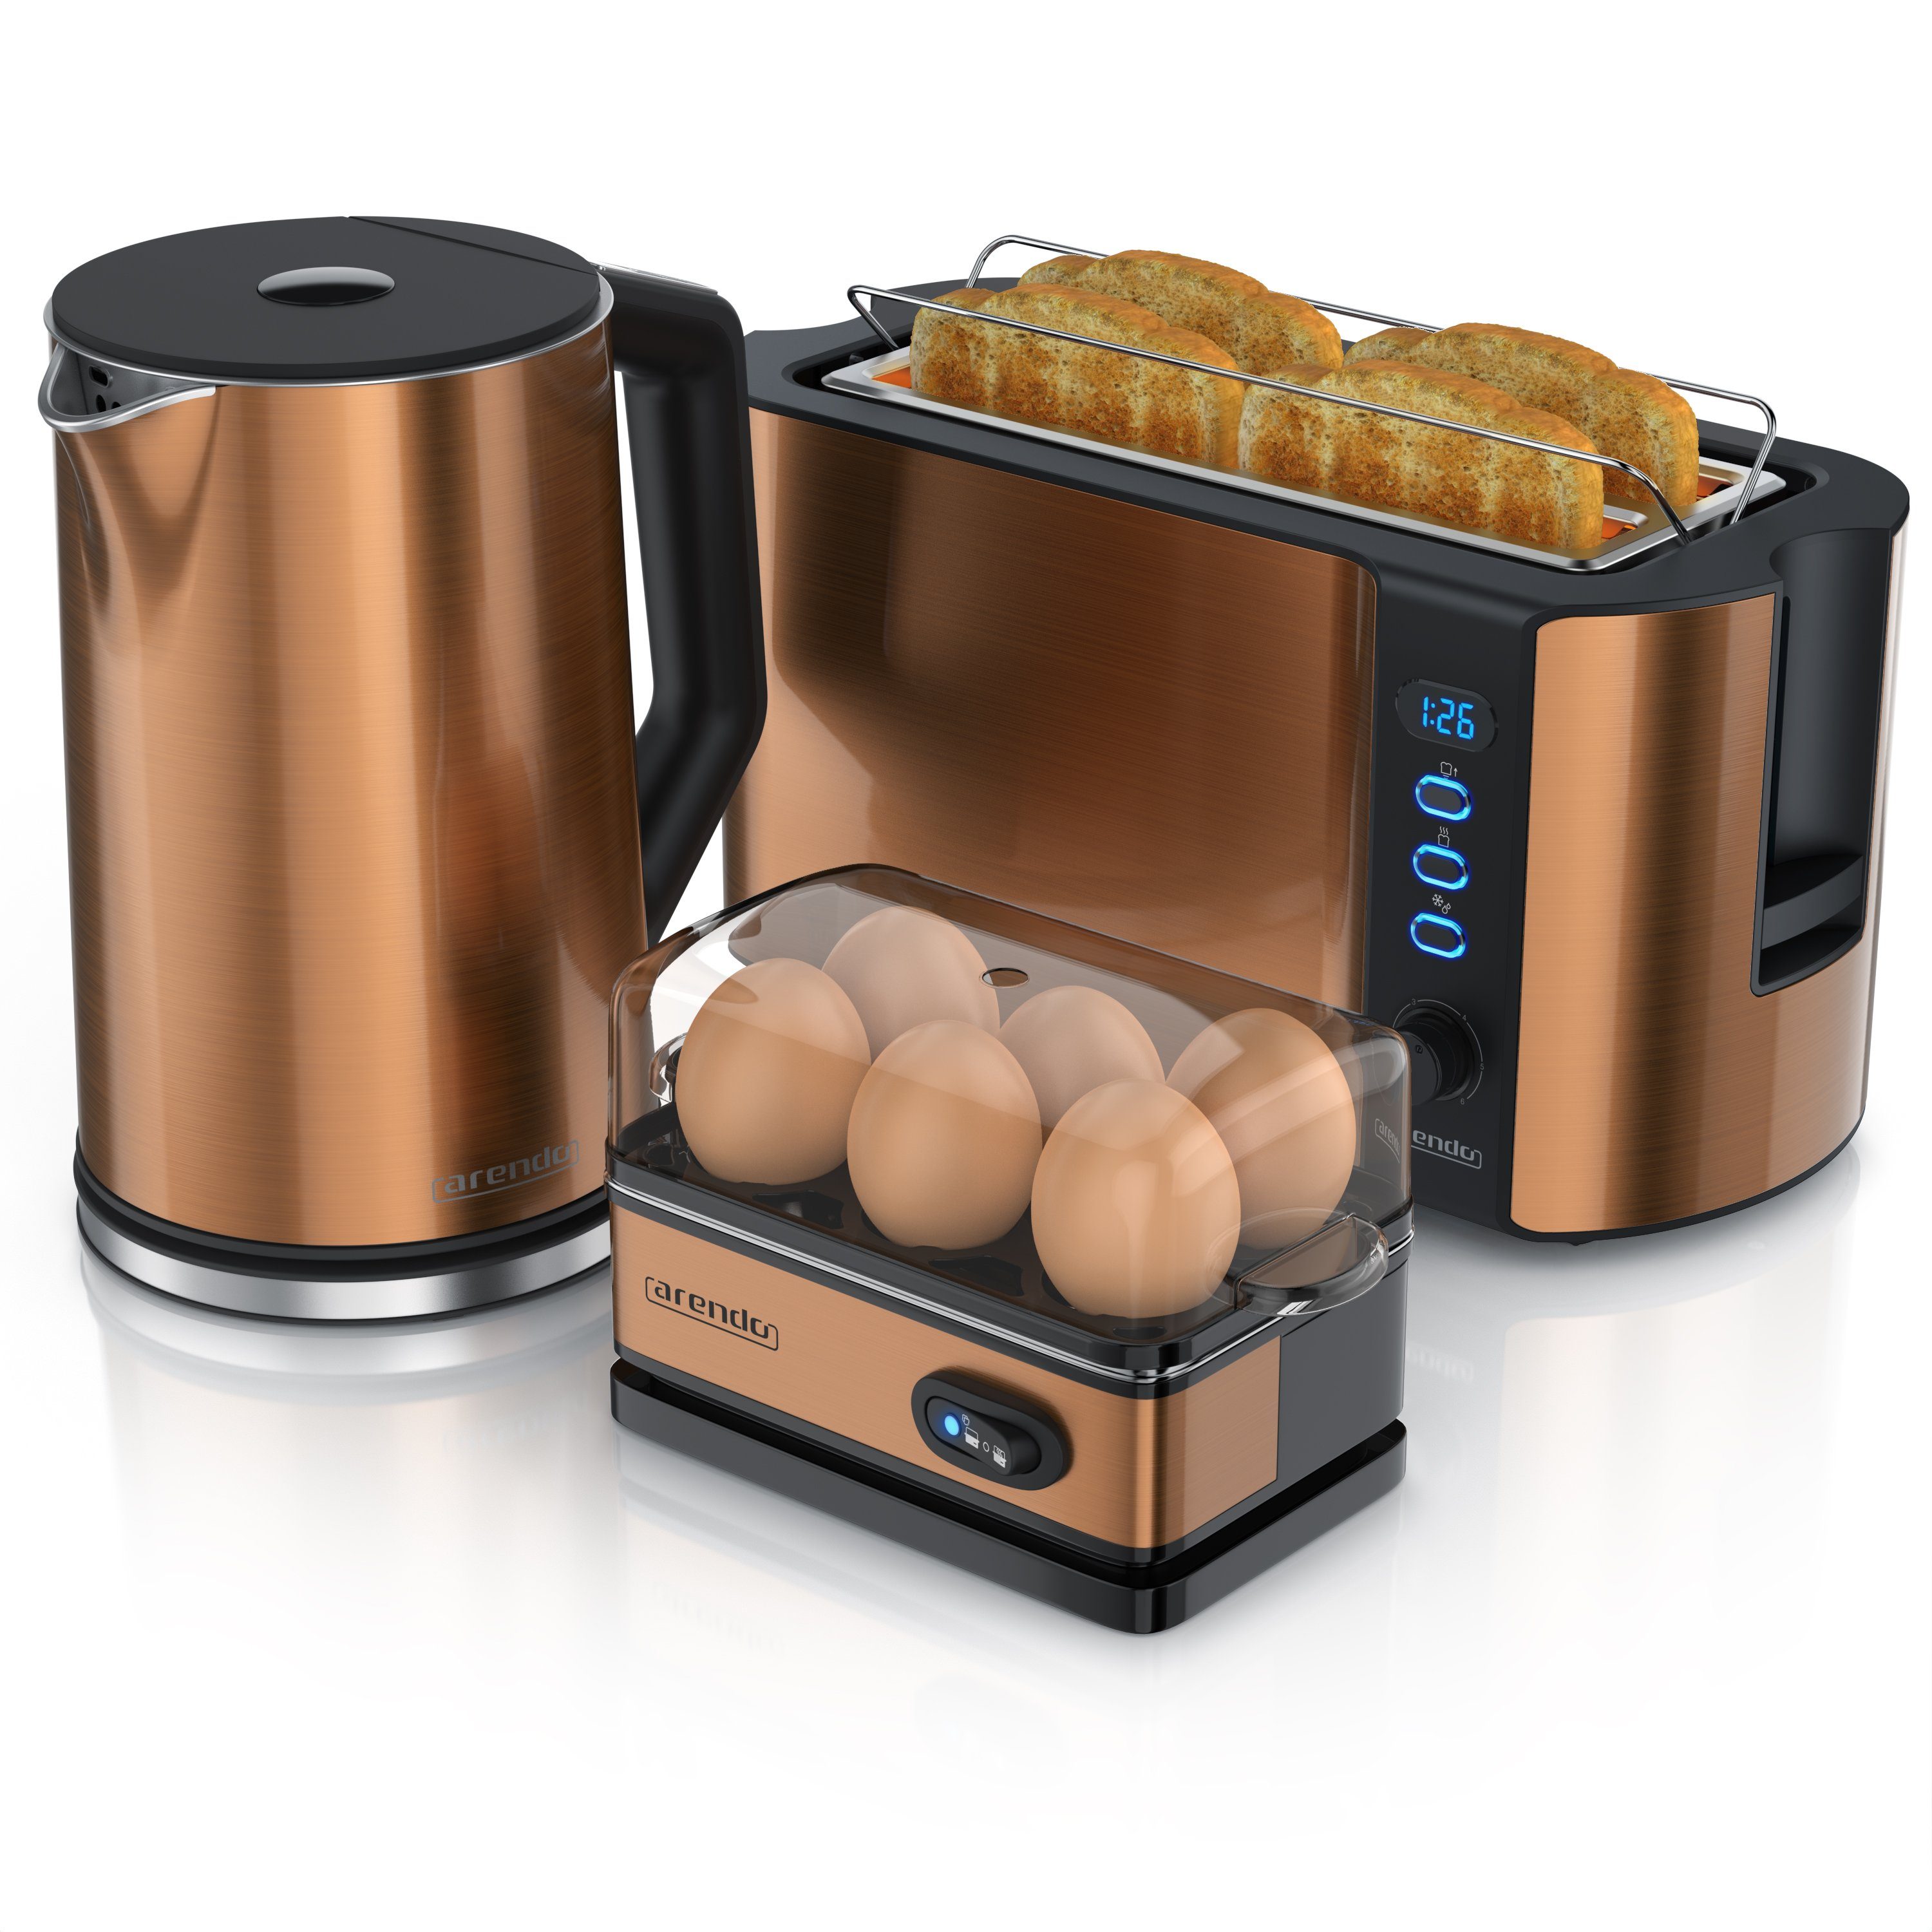 Frühstücks-Set Arendo 4-Scheiben (3-tlg), 6er Wasserkocher Eierkocher, 1,5l, Toaster, Kupfer